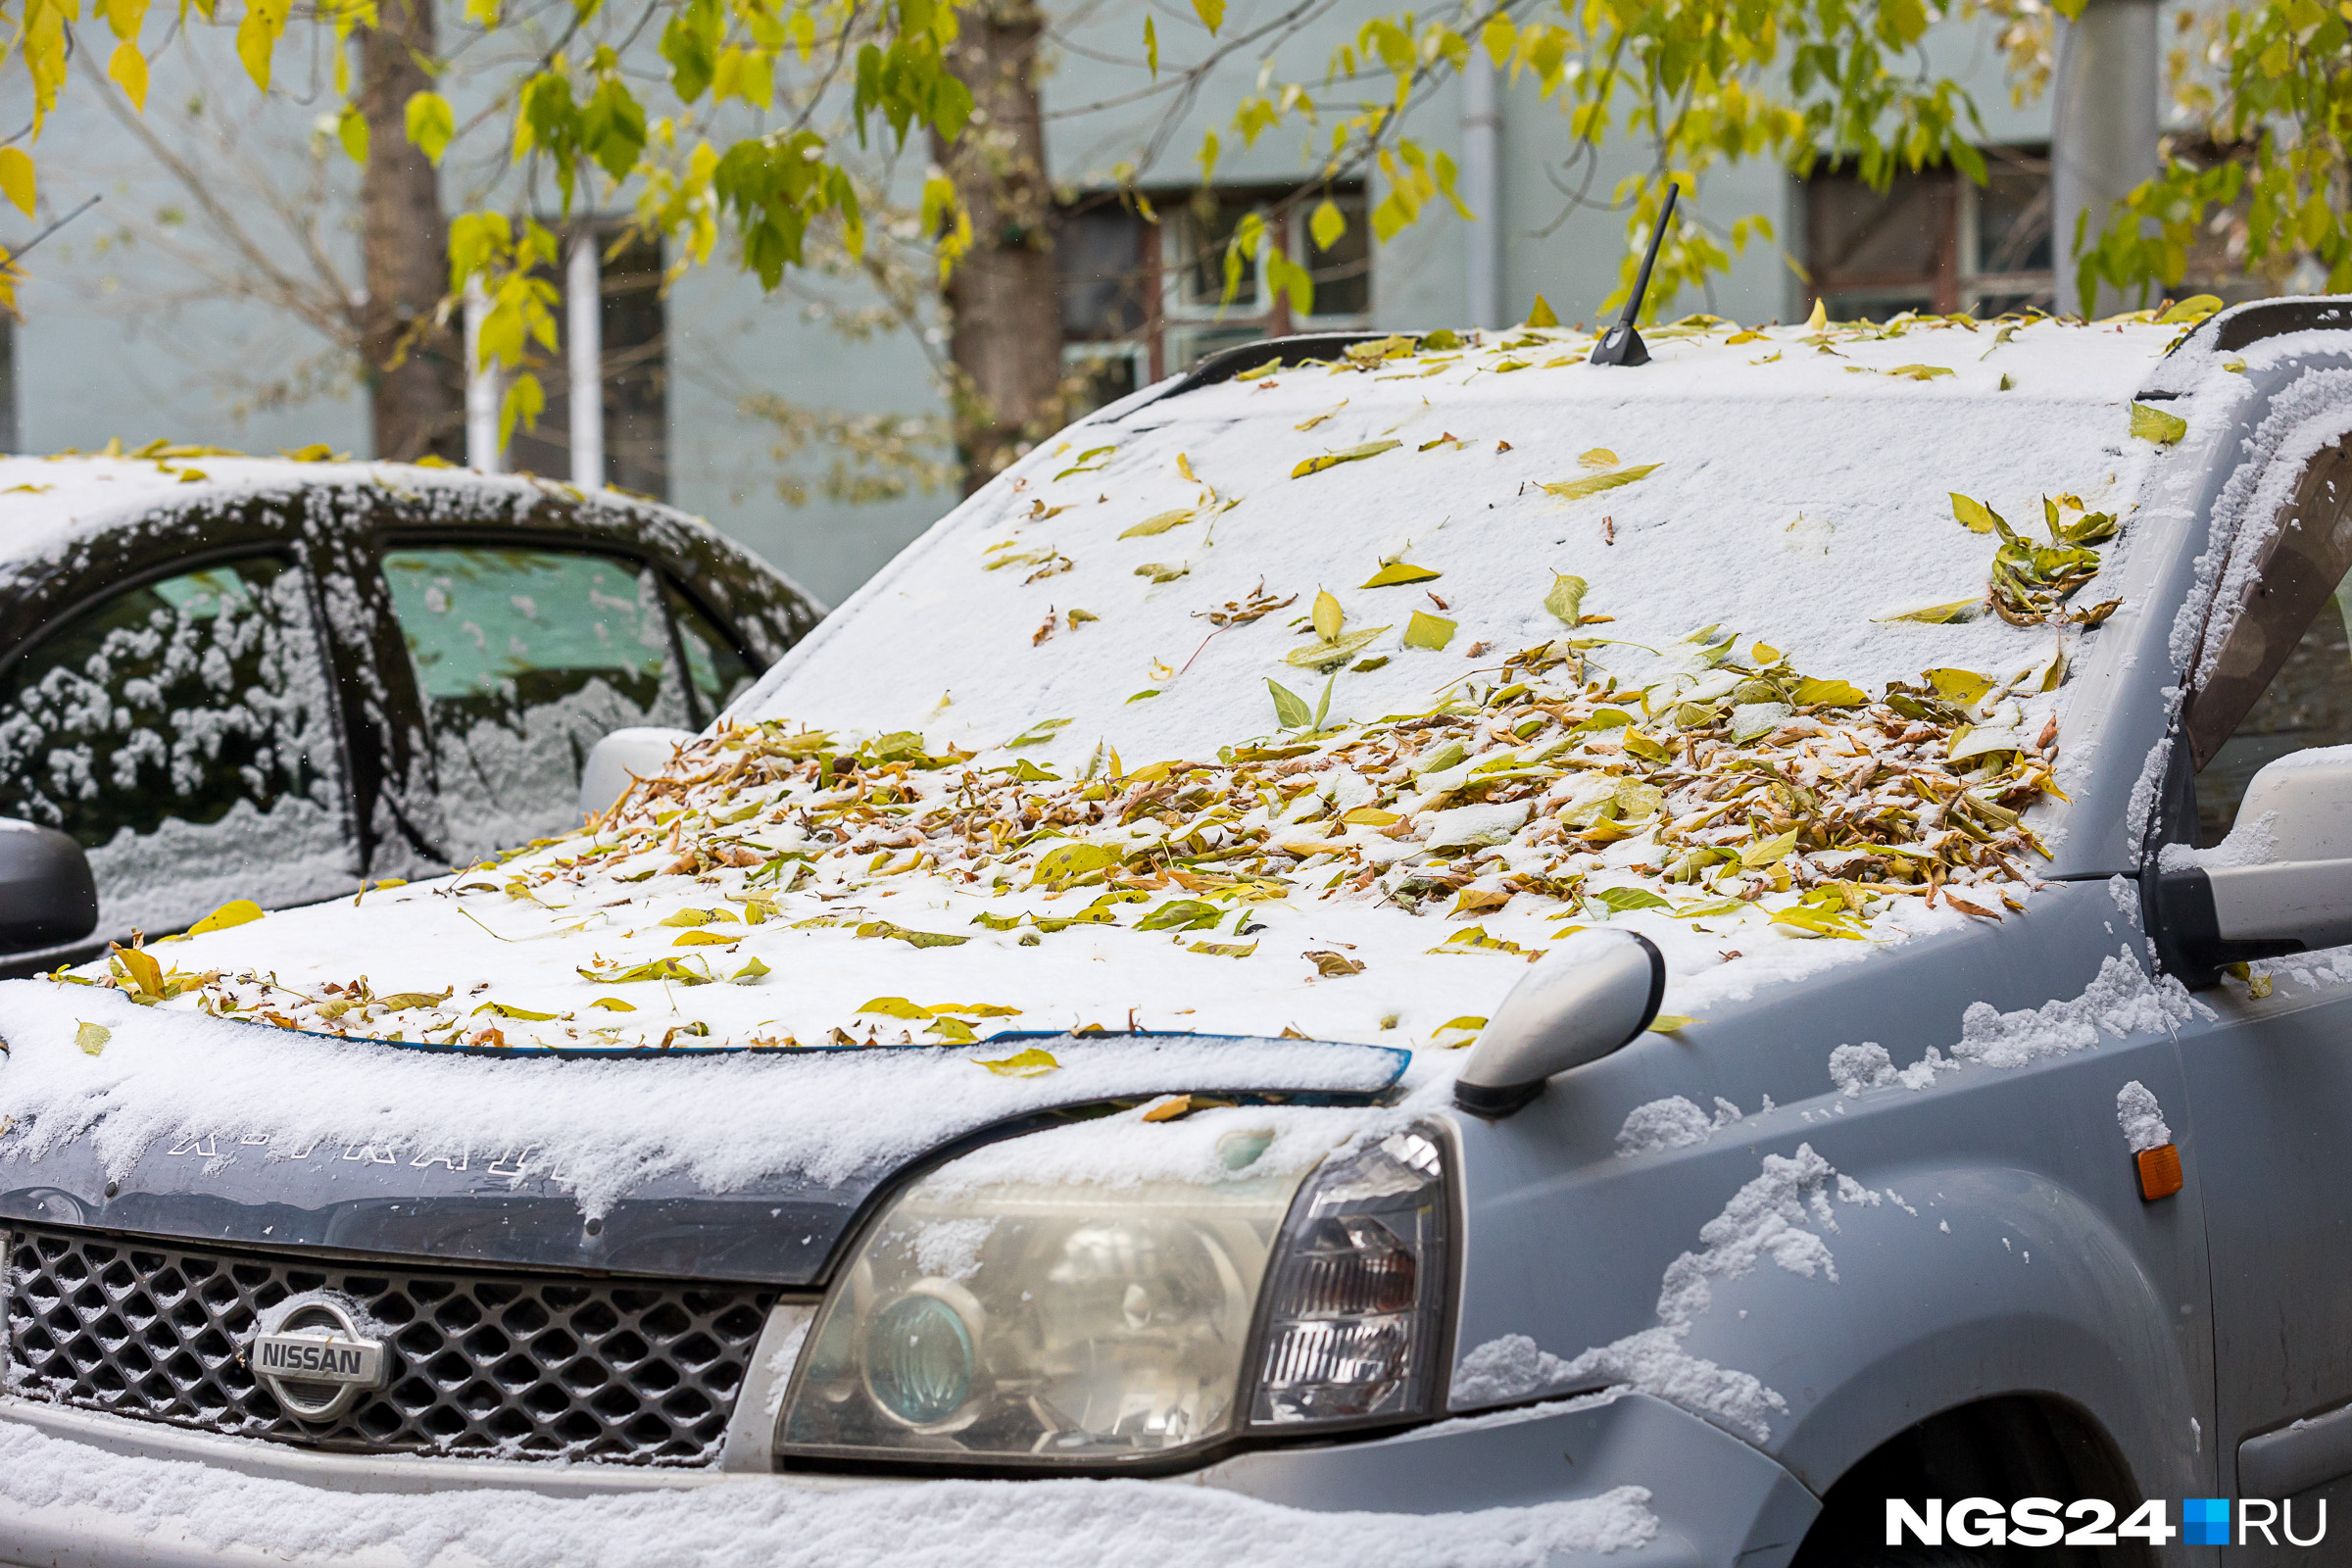 Сегодня машину чистили и от листьев, и от снега, и от грязи